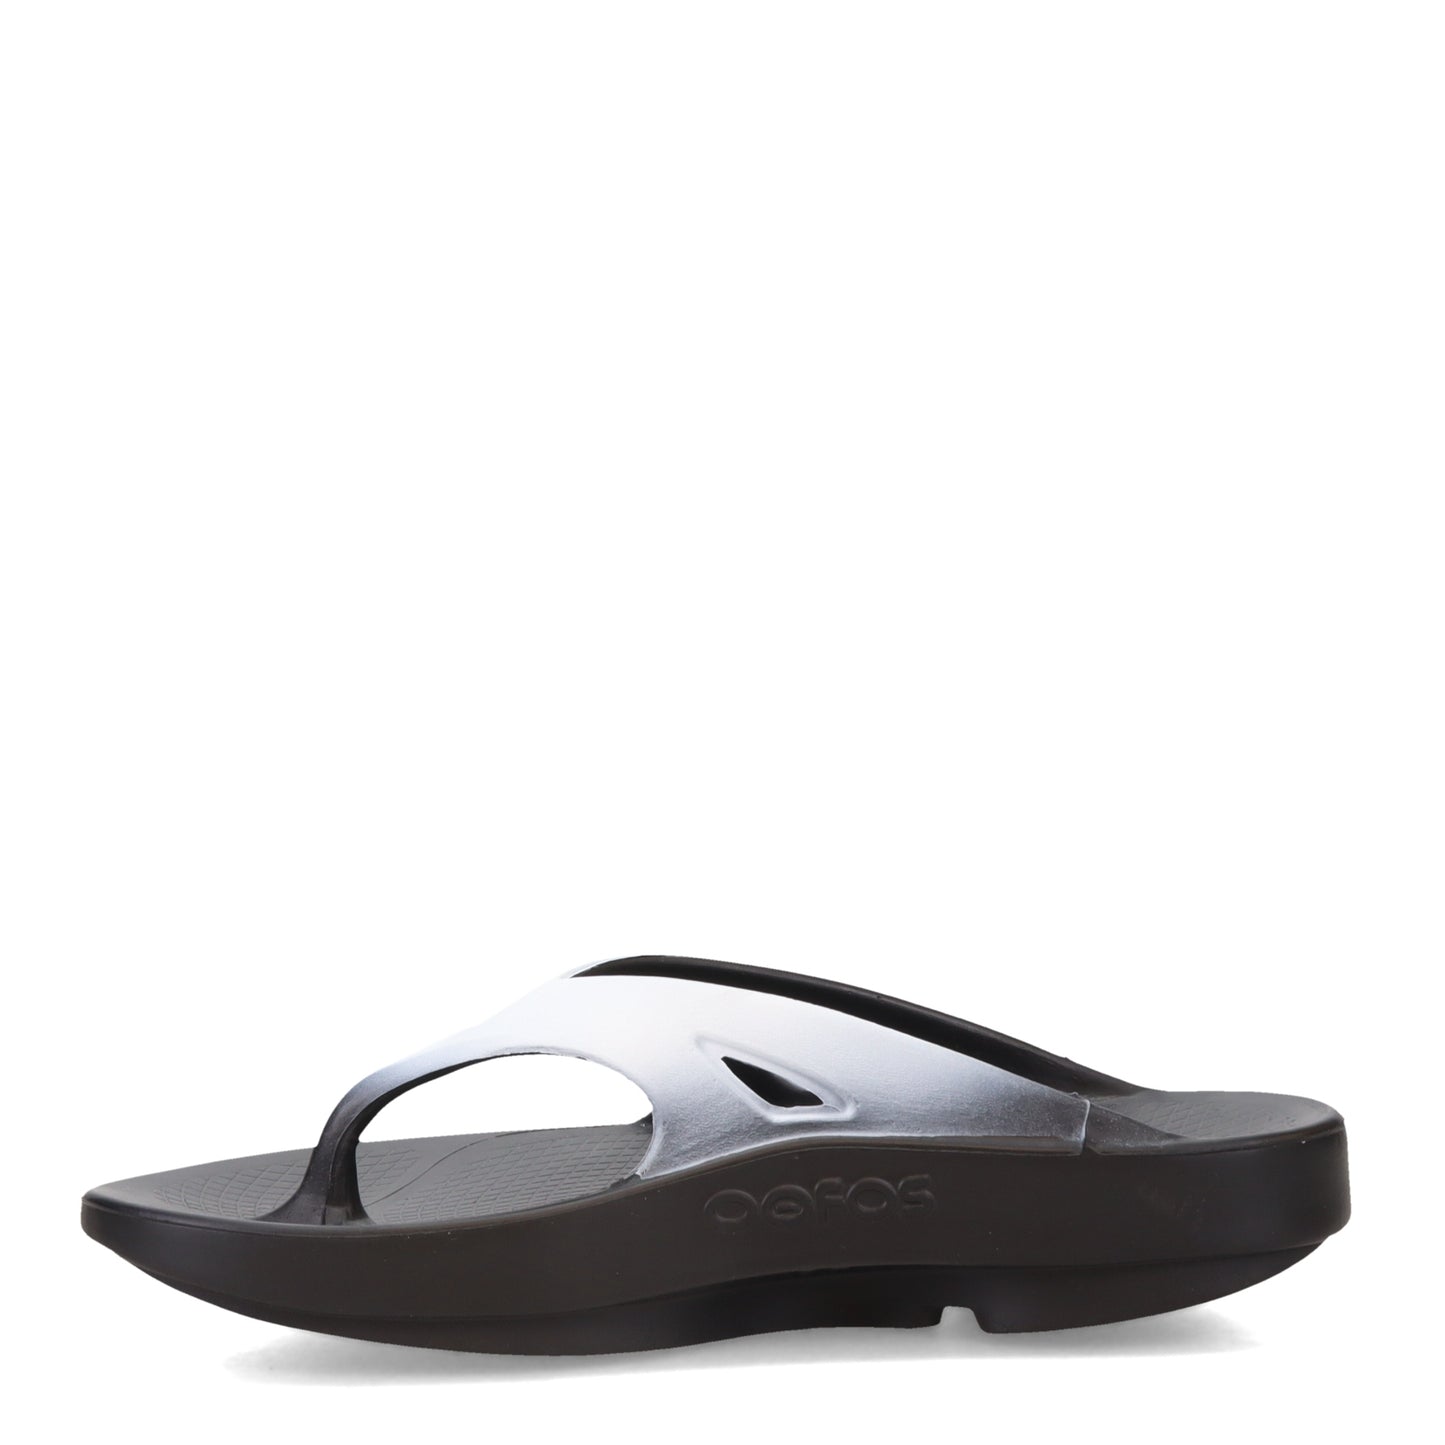 Peltz Shoes  Unisex Oofos Ooriginal Sandal BLACK WHITE 1001-BLACK CLOU